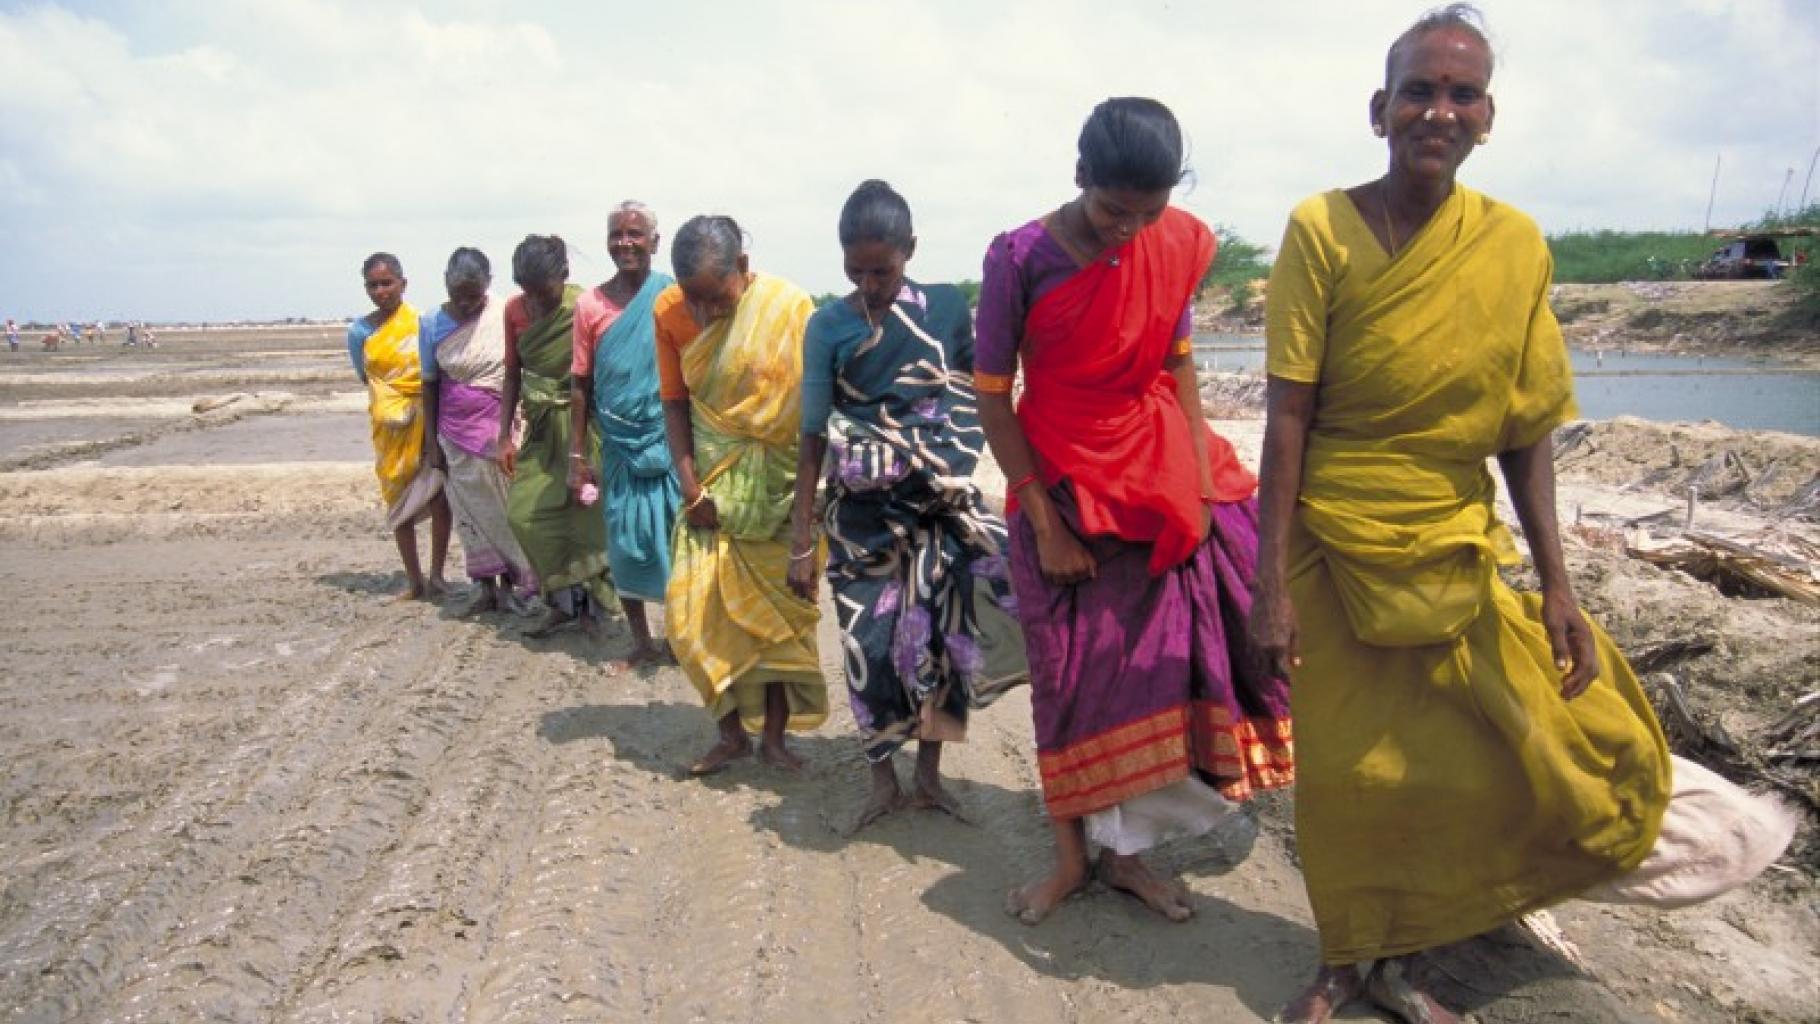 Foto: Arbeitende Frauen auf einer Salzplantage in Indien